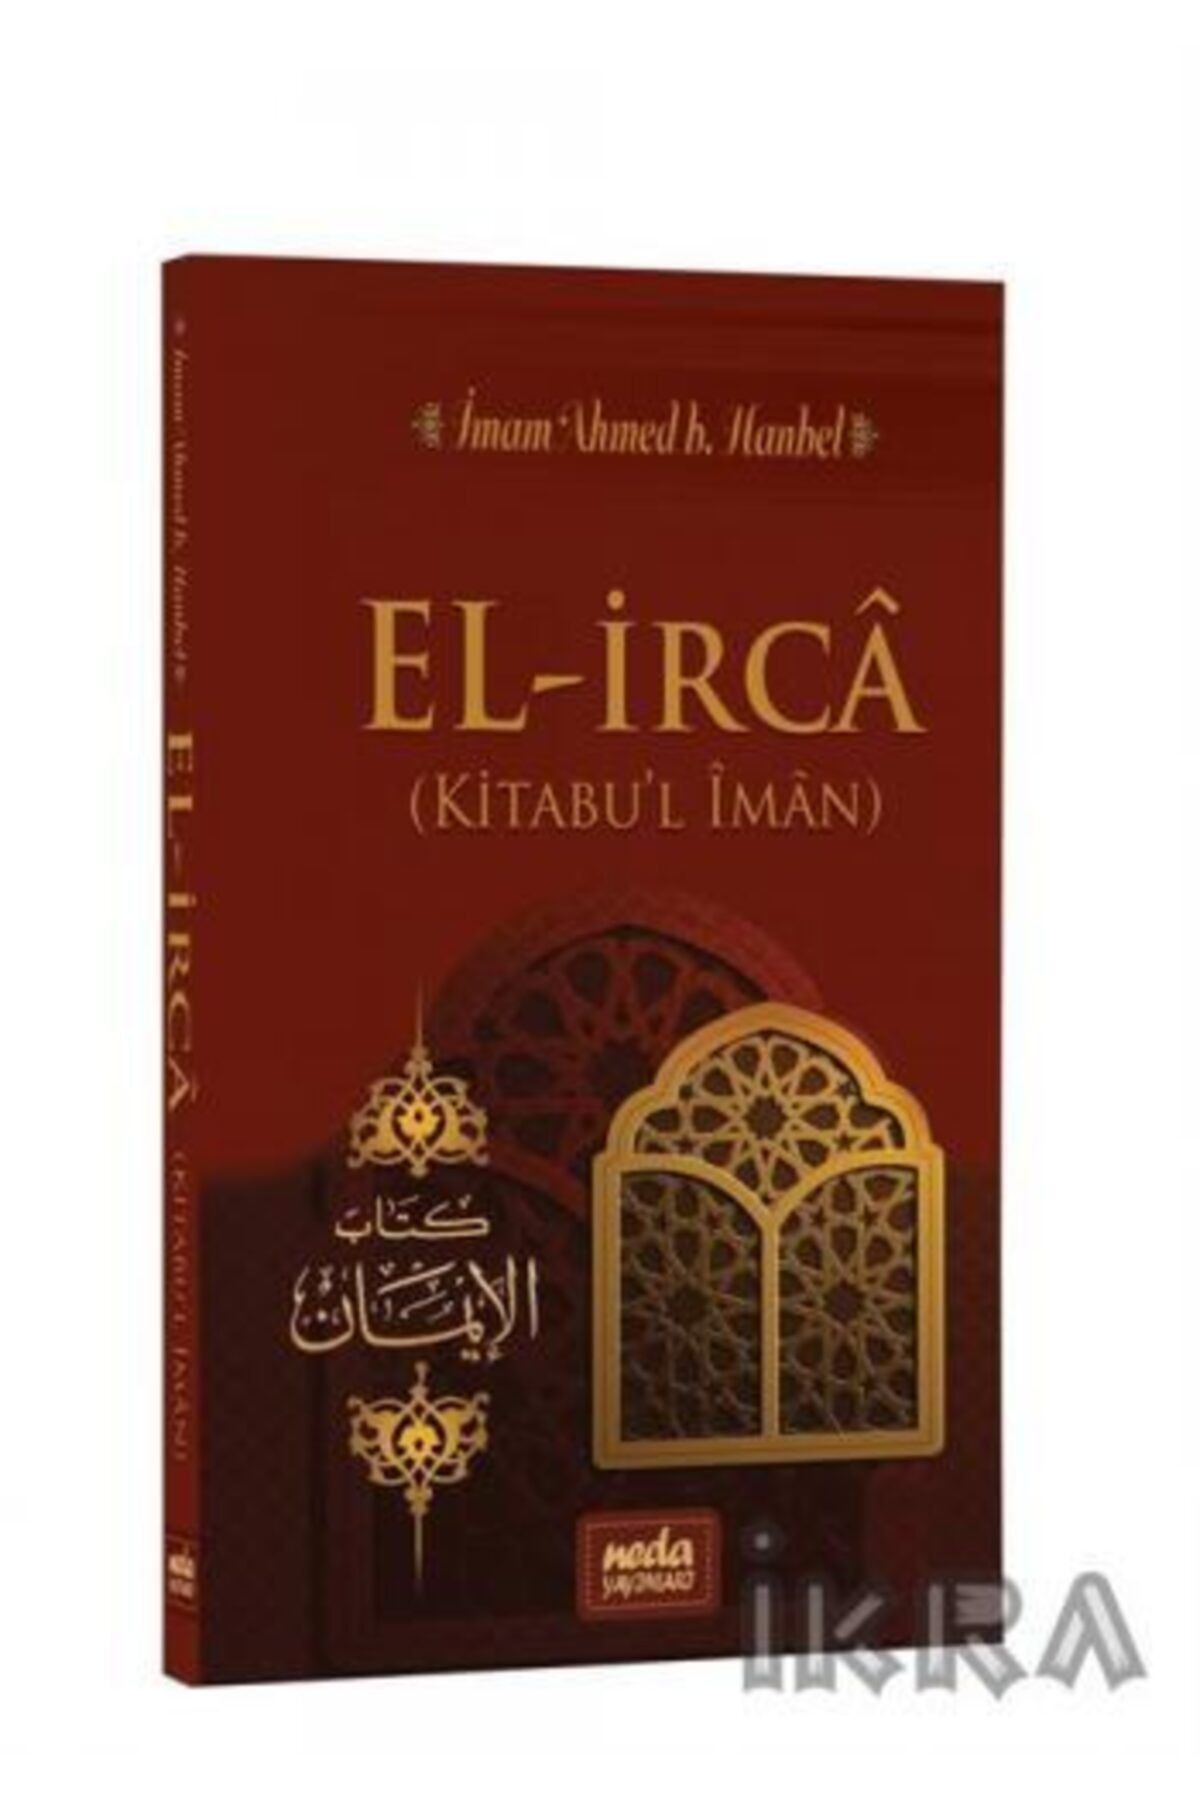 Neda Yayınları El-irca (kitabul Iman), Ahmed B. Hanbel, 14x21 Cm. Neda Yay